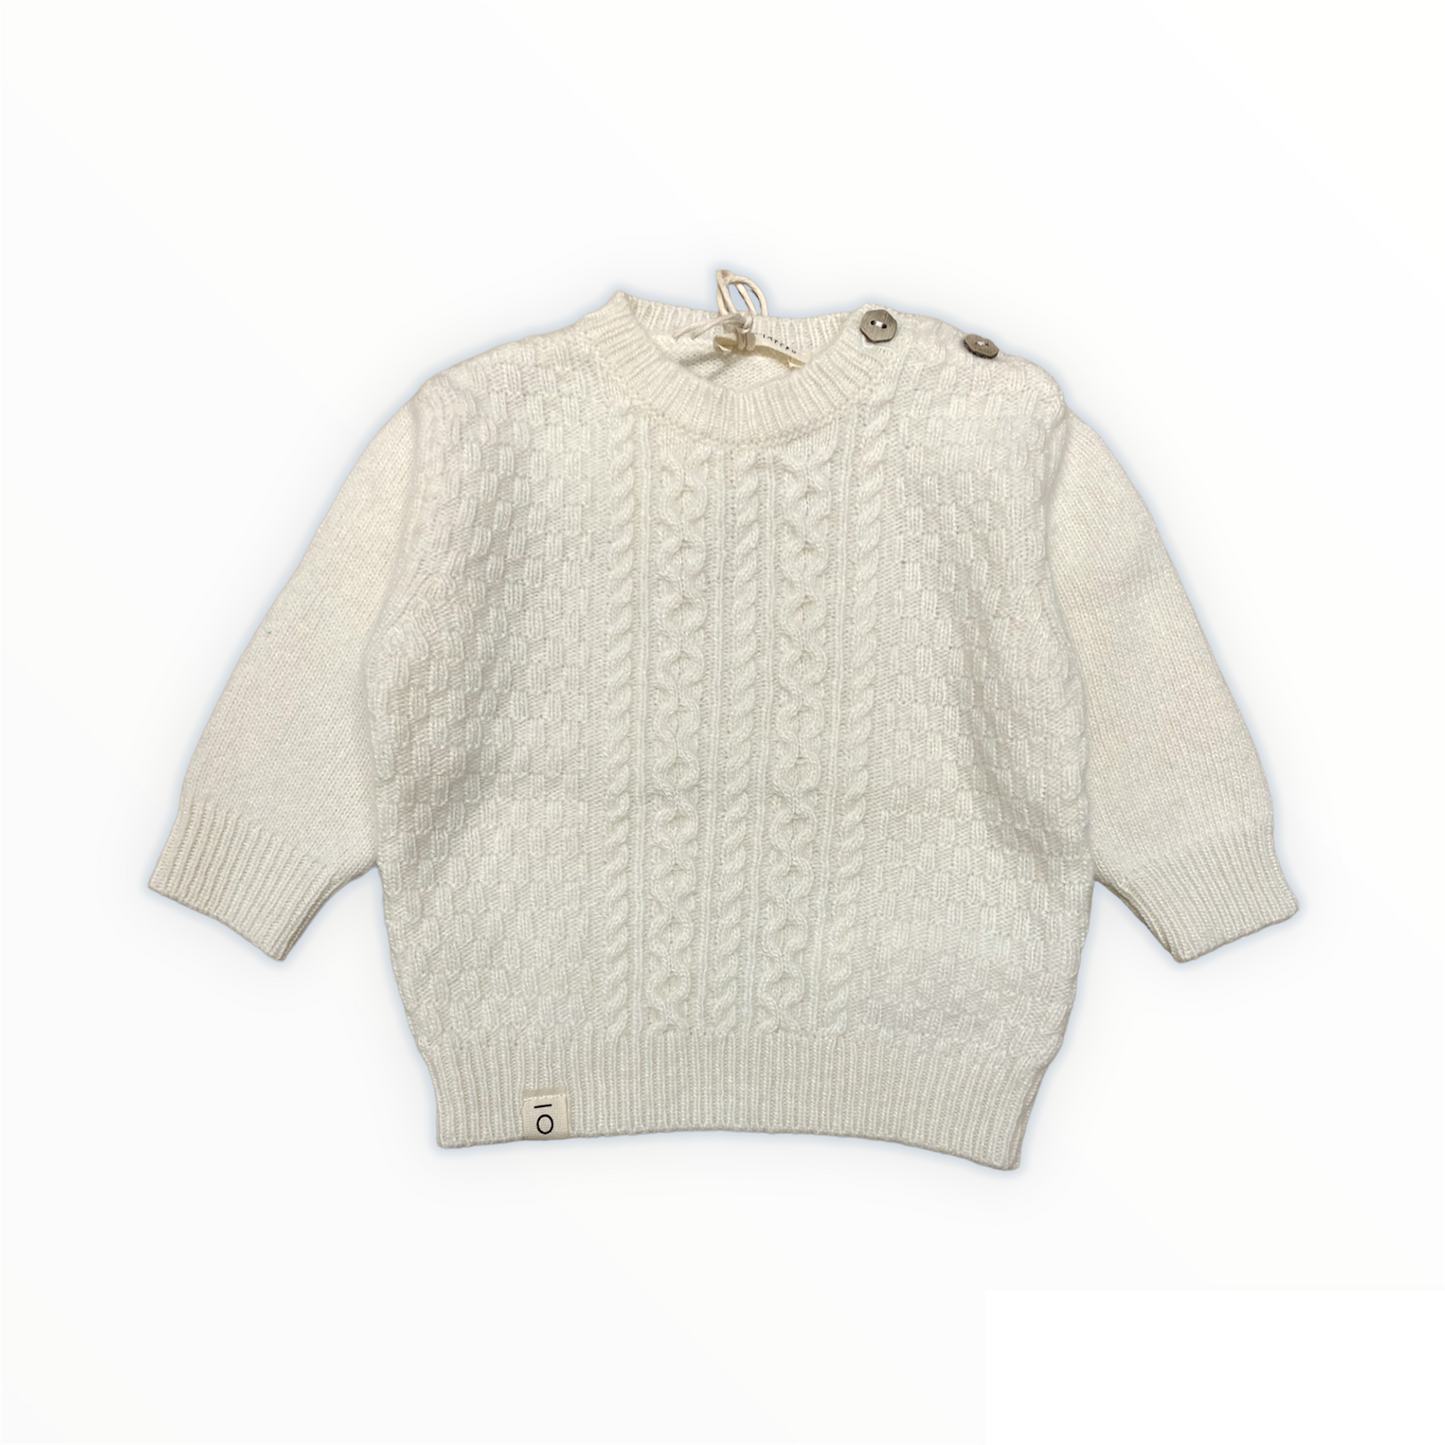 Maglione tricot panna, lana e cashmere